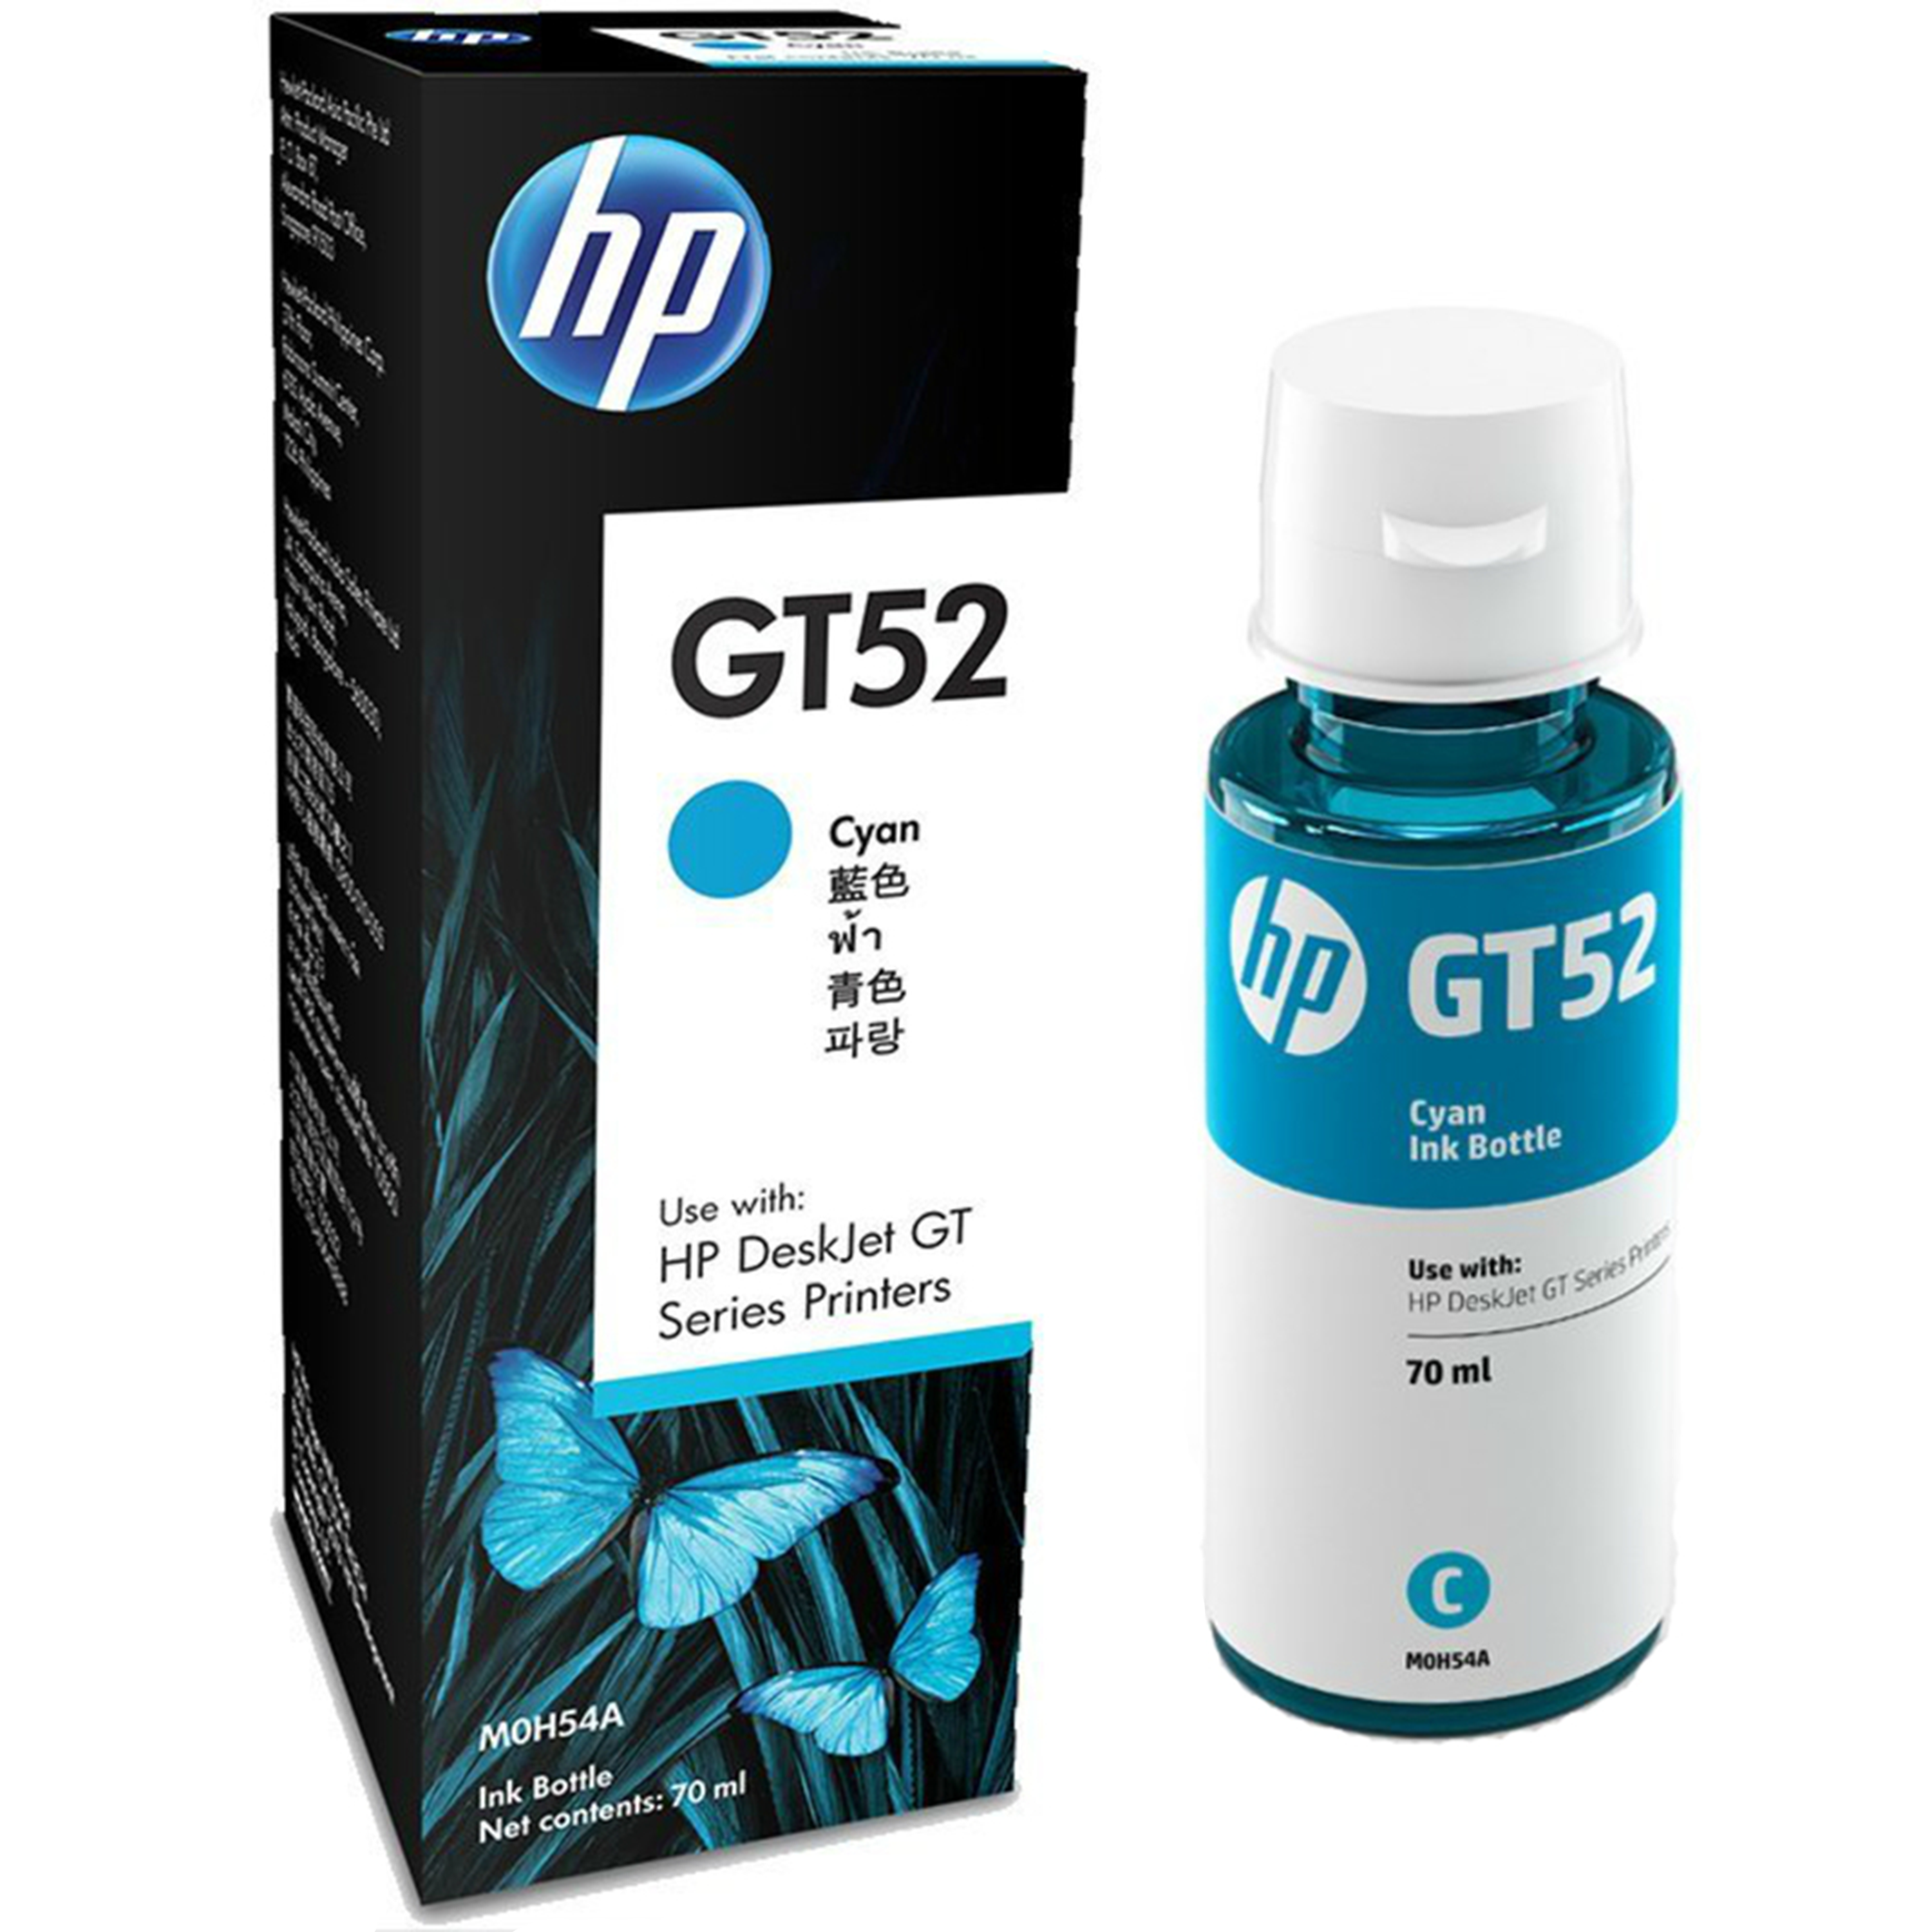 בקבוק דיו ציאן סדרה M0H54AE GT52 למדפסת דגם HP DeskJet GT 5820/5810